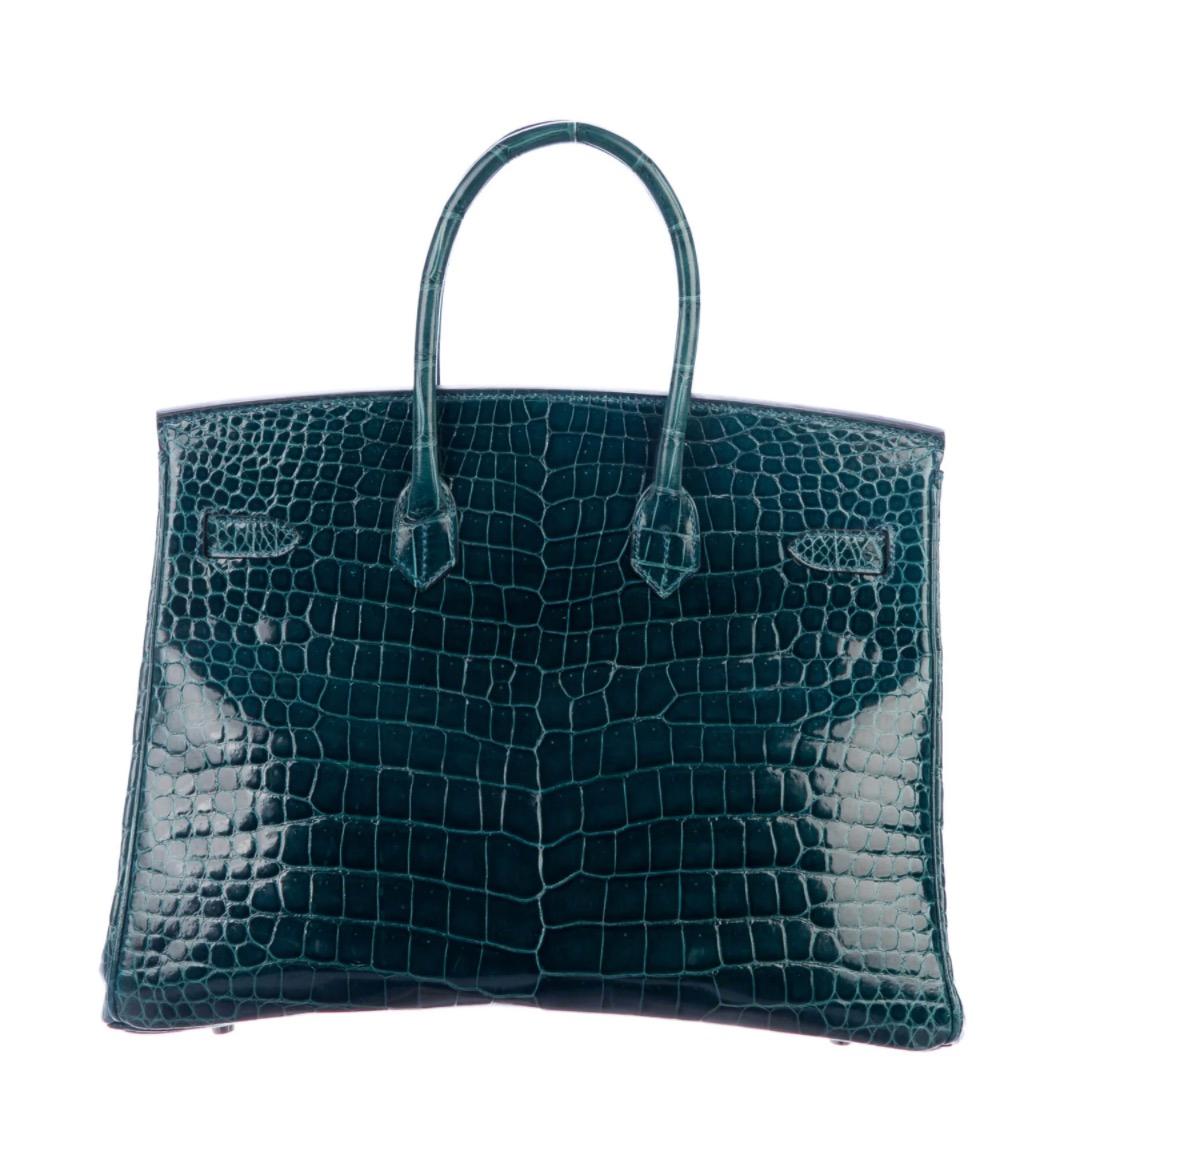 Blue Hermes Birkin 35 Teal Crocodile Palladium Exotic Top Handle Satchel Tote Bag 